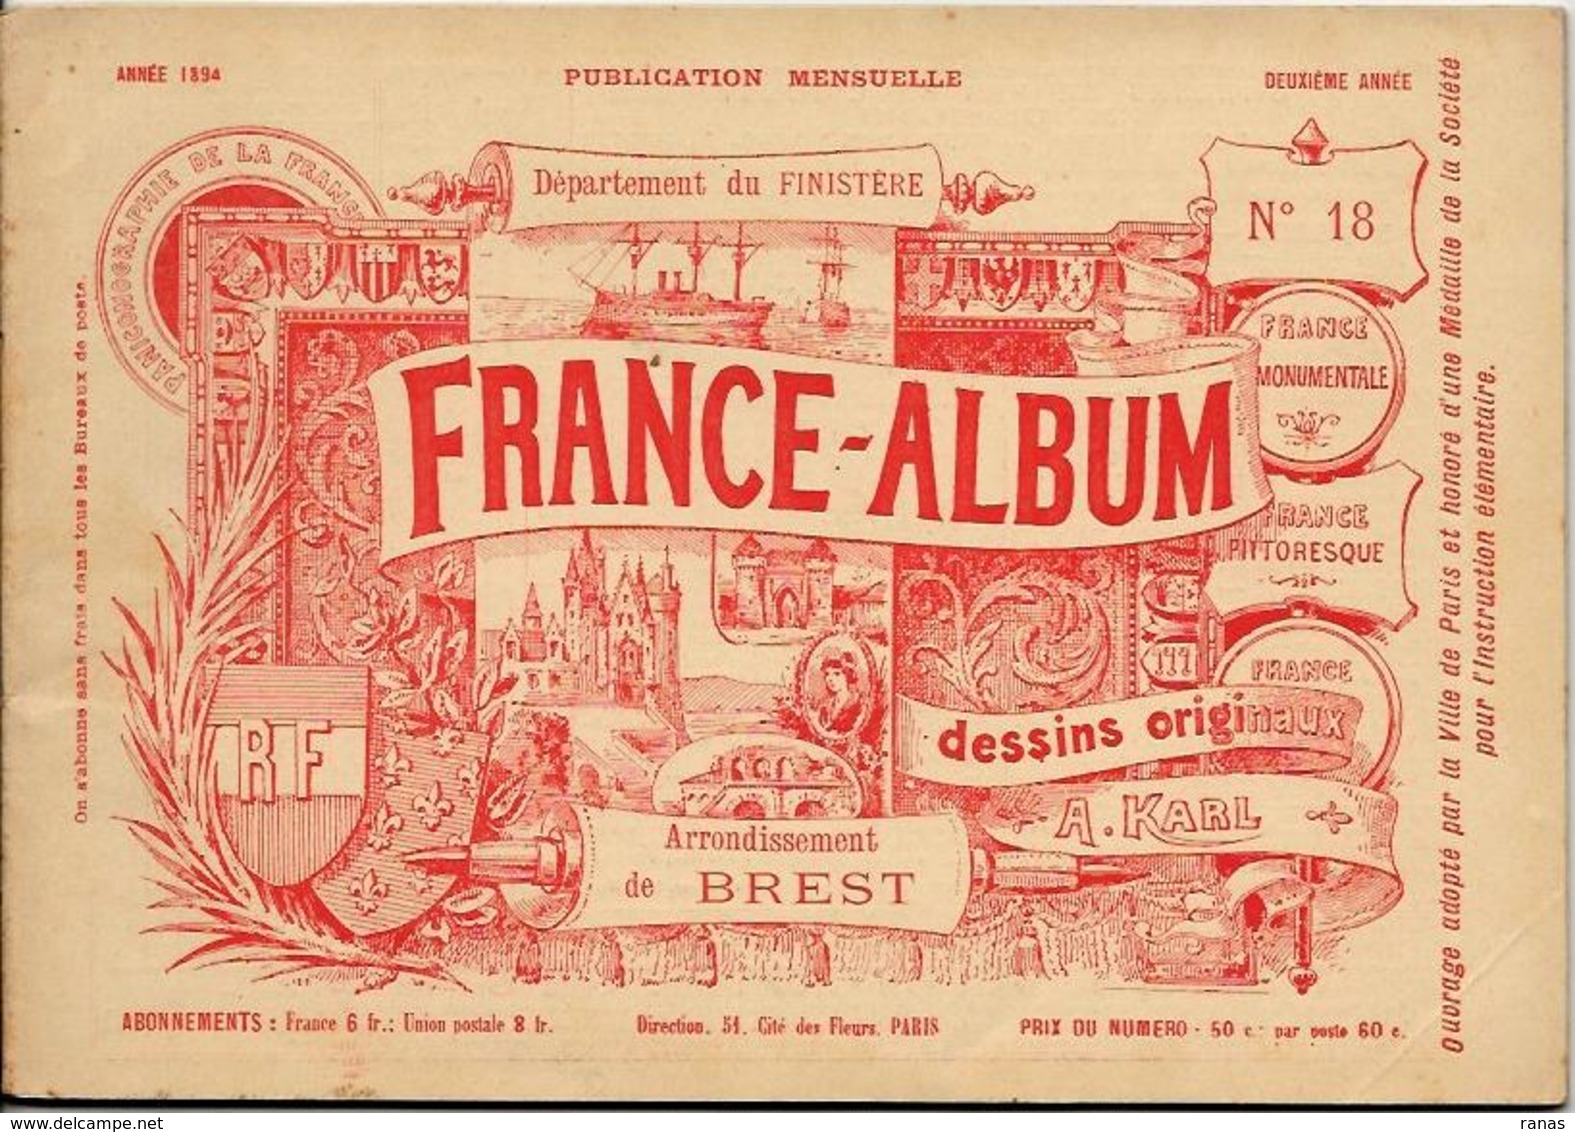 Finistère France Album De A. KARL, Carte Gravures Texte Publicités 1894 - Reiseprospekte